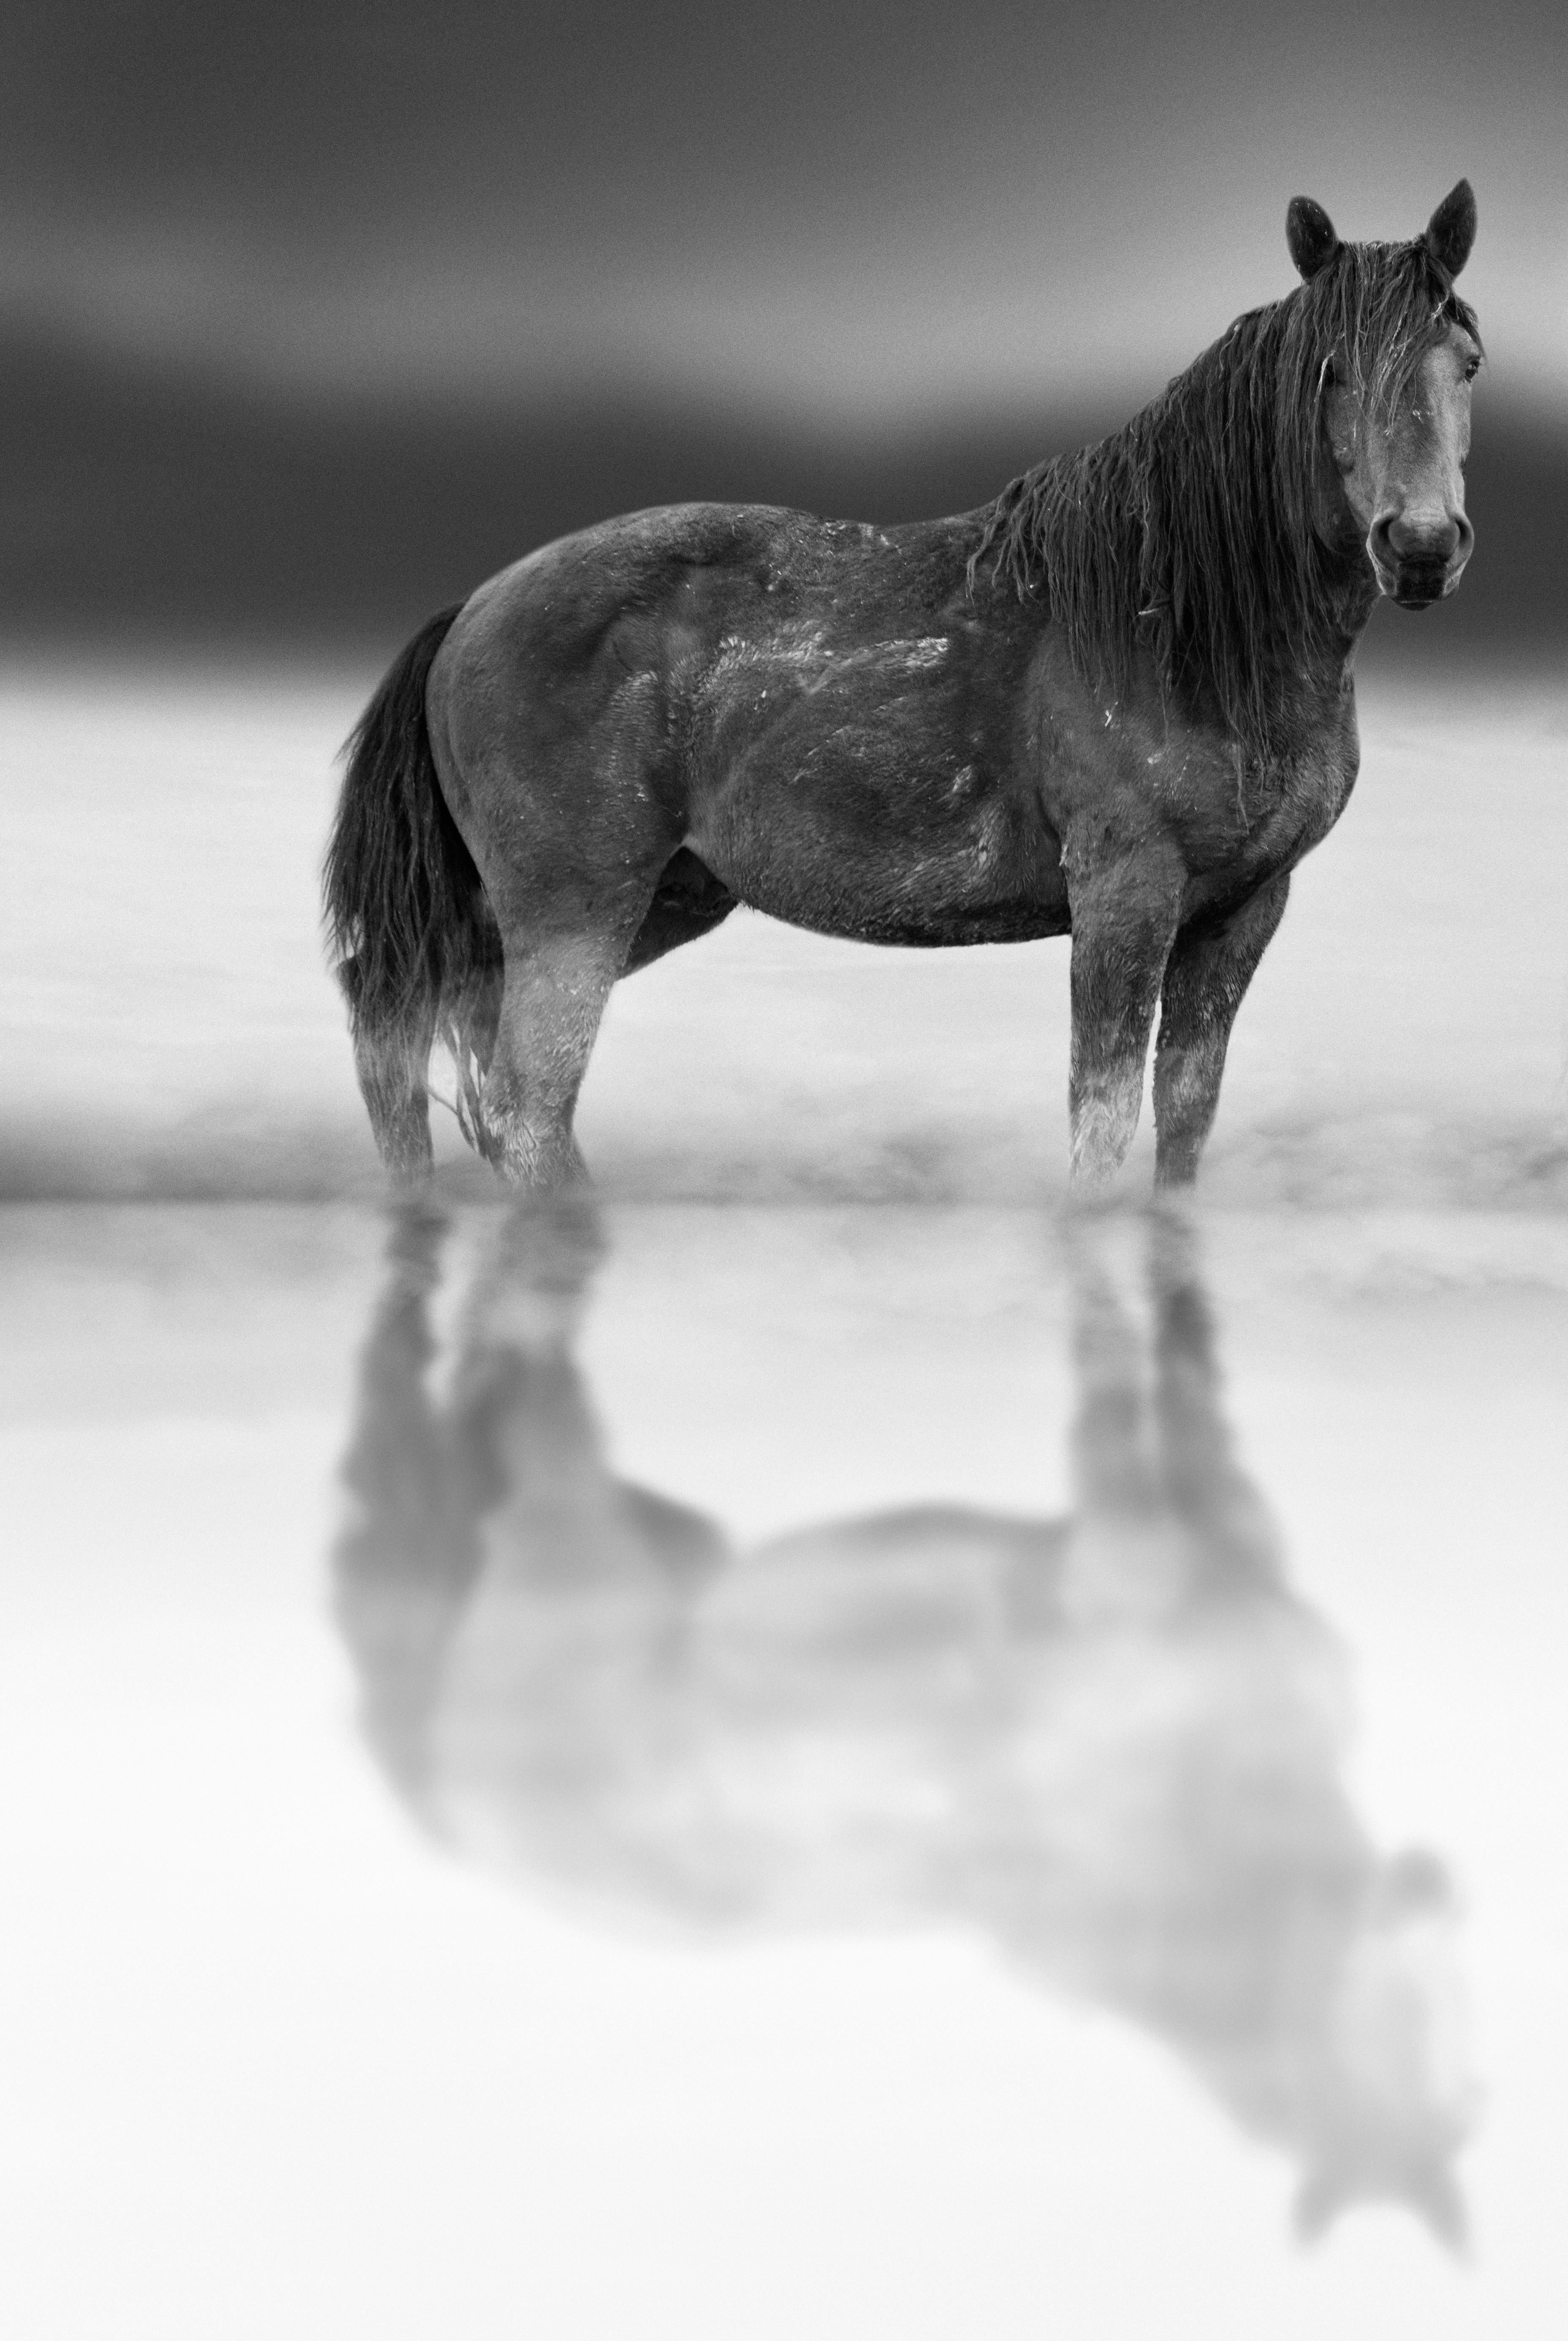 Animal Print Shane Russeck - « Belle Starr » 36x48  Photographie en noir et blanc d'un cheval sauvage  Chevaux Mustang